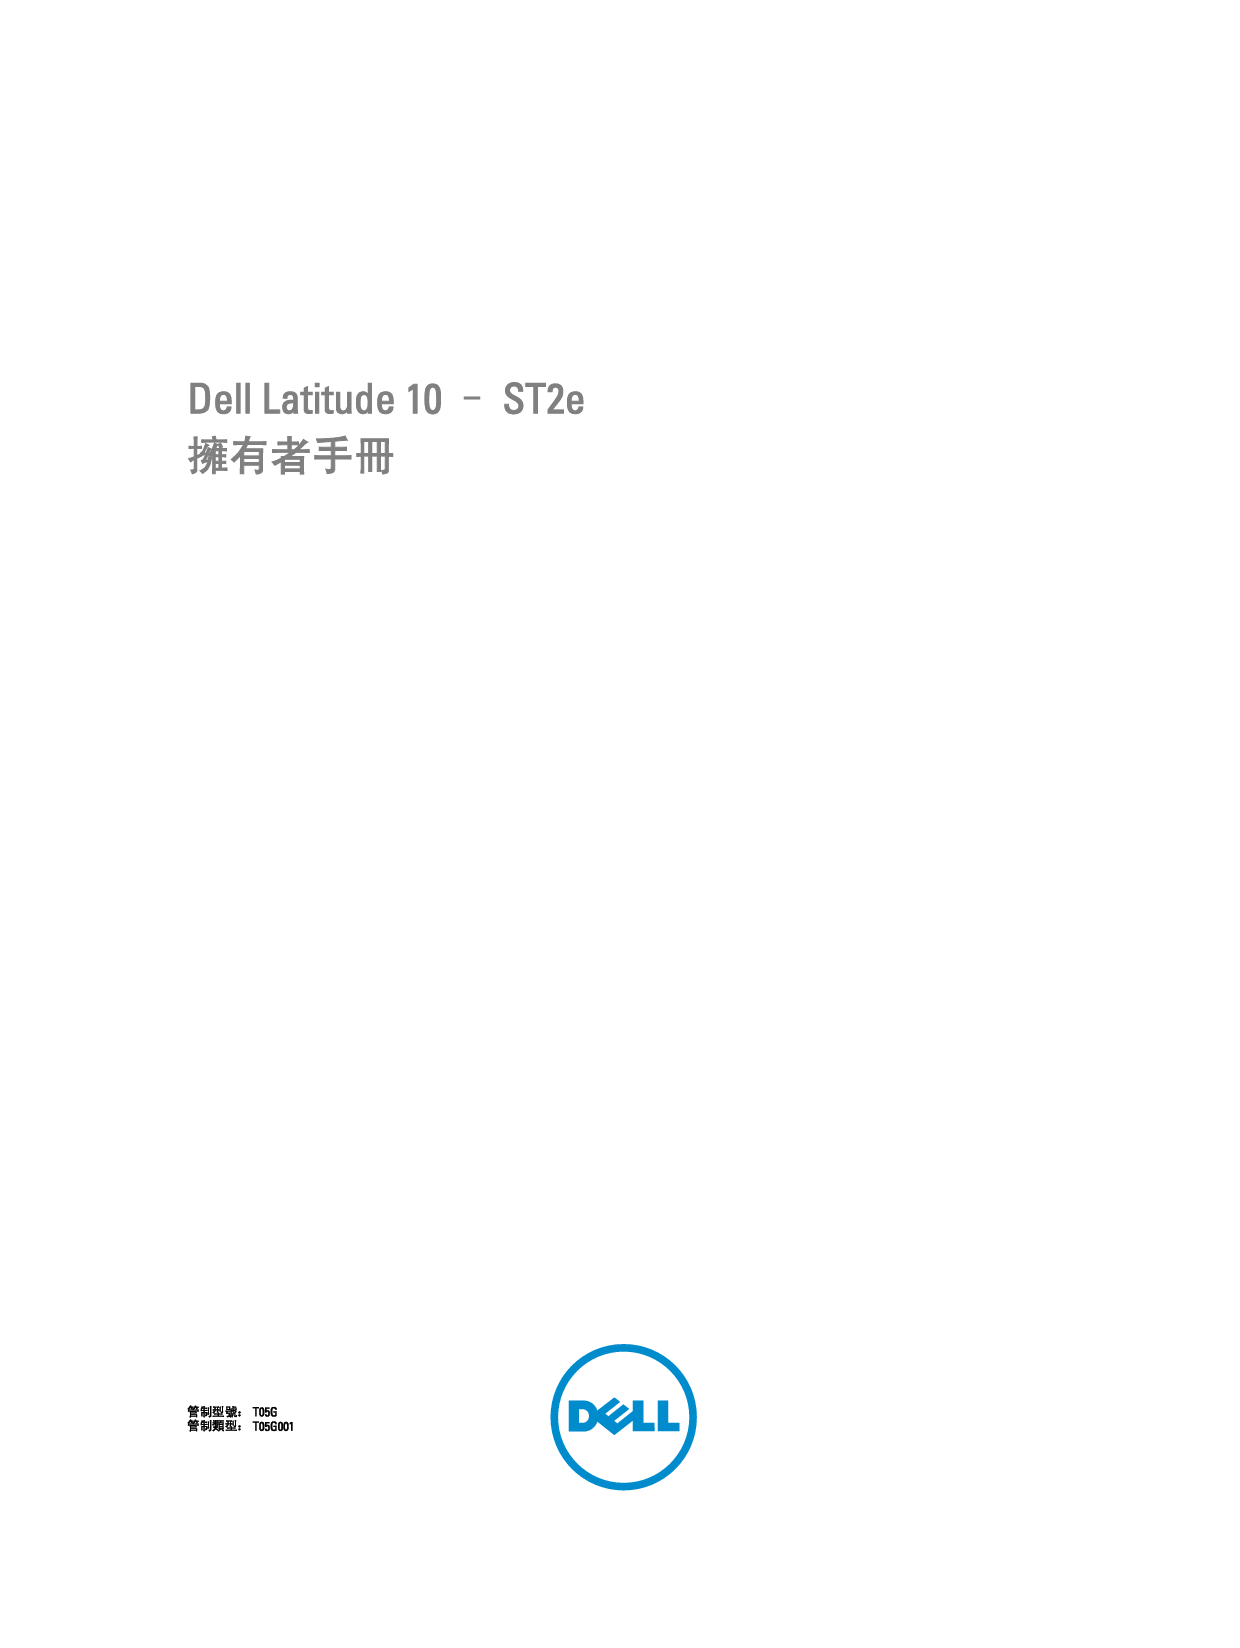 戴尔 Dell Latitude 10 ST2E 繁体 用户手册 封面